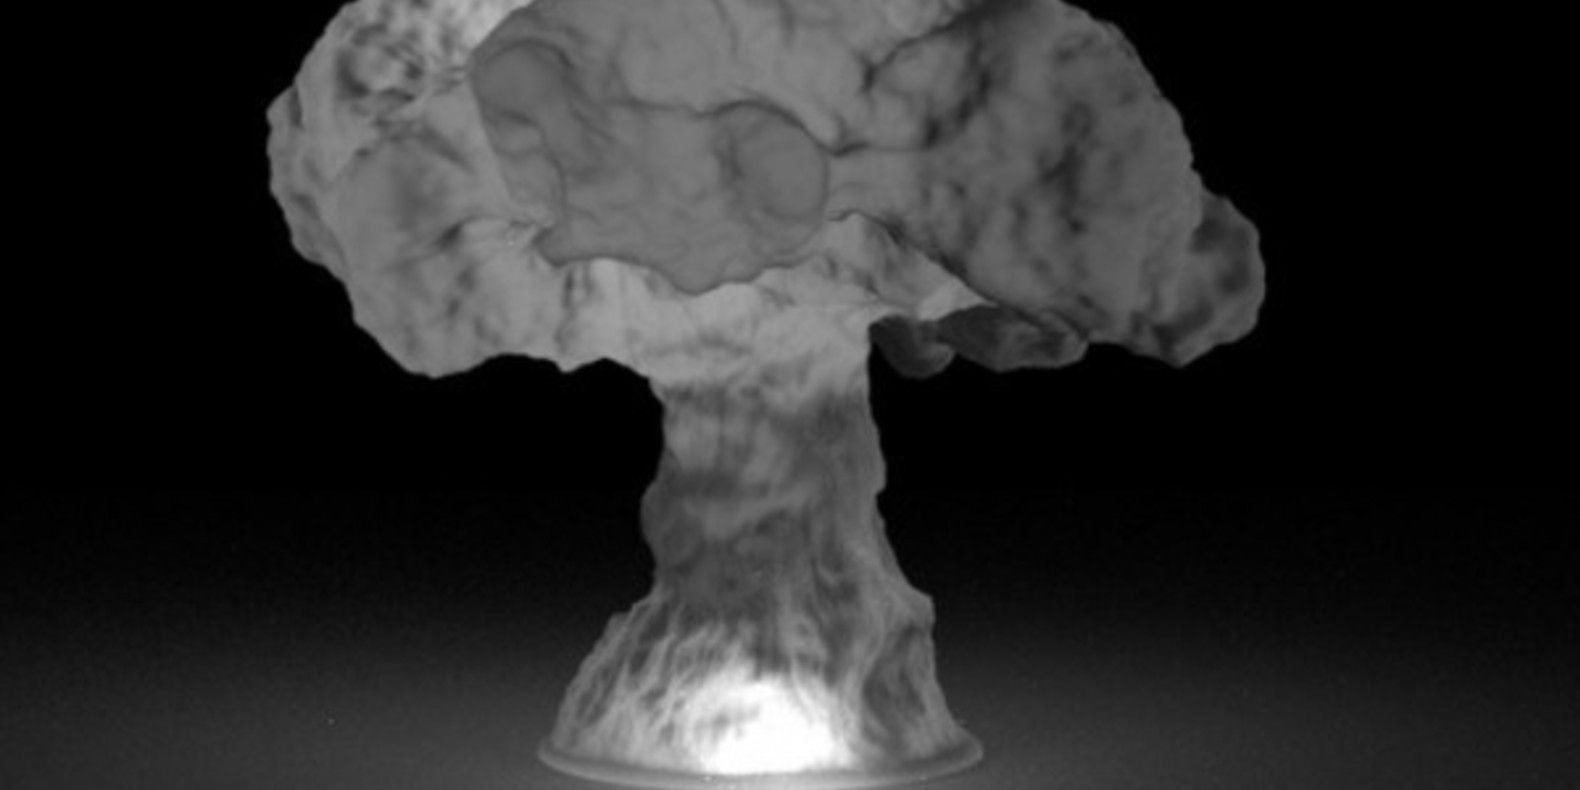 maxim sachs nuclear cloud nuage nucléaire en 3D fichier 3D cults 3D cults designer createur objet lampe led 4